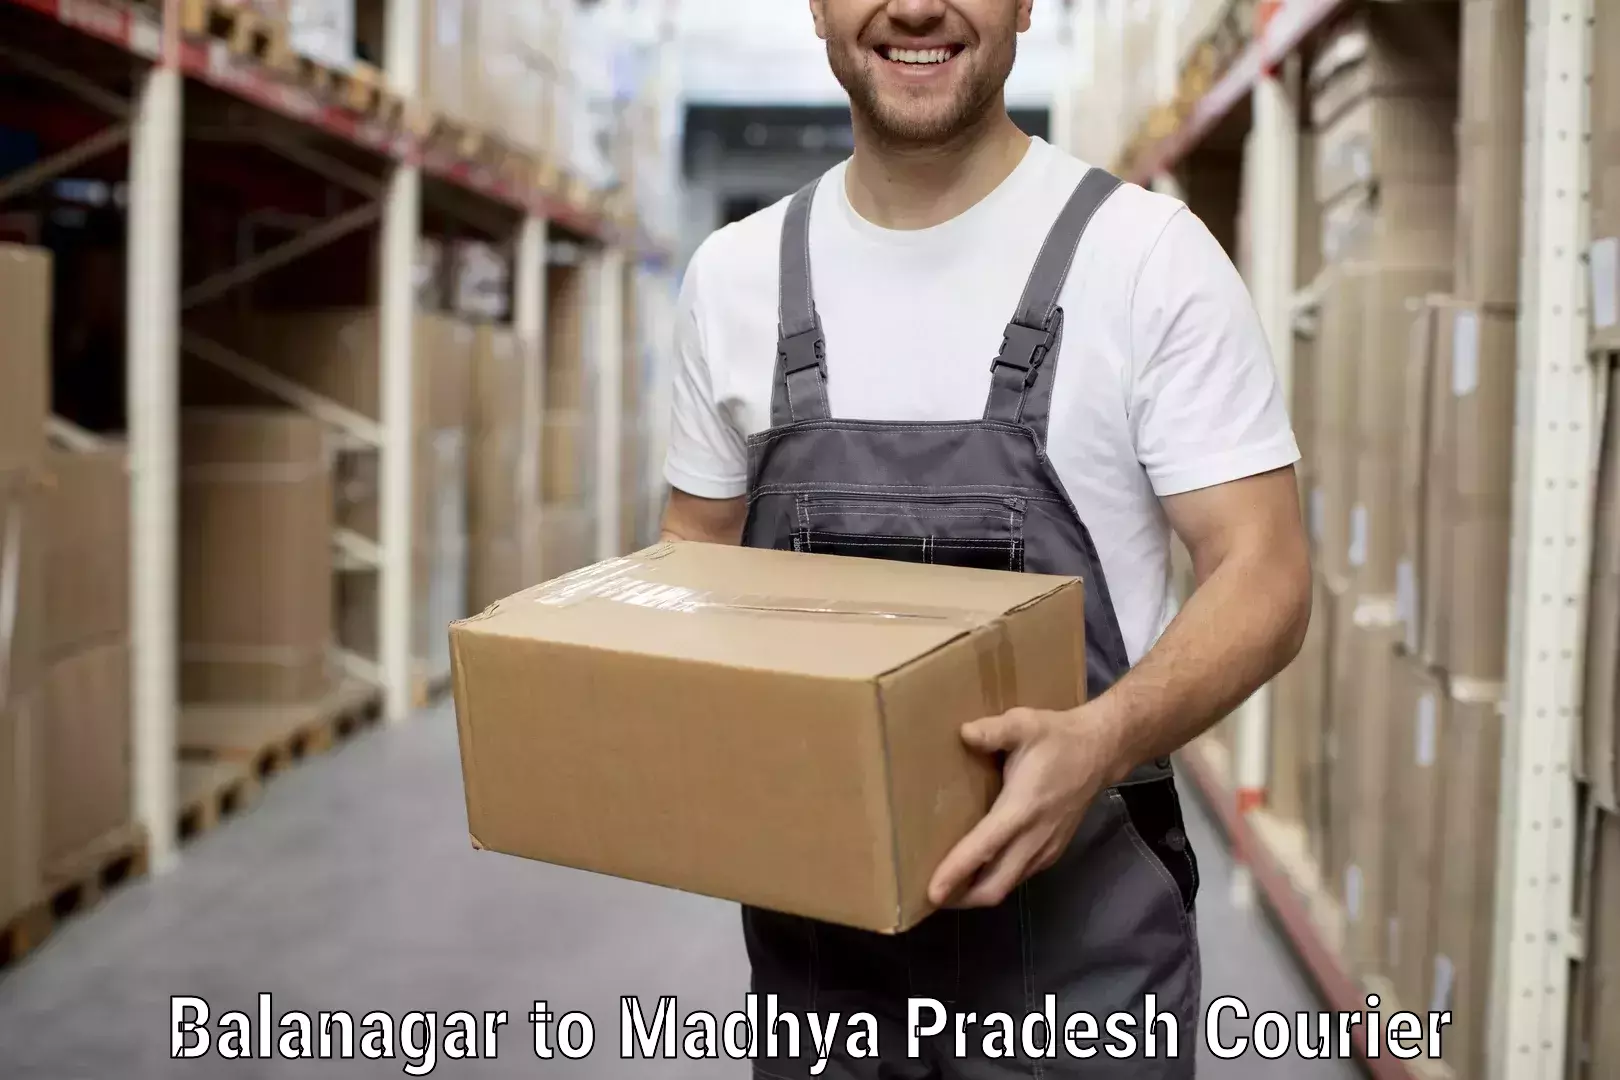 Expert packing and moving Balanagar to Nagda